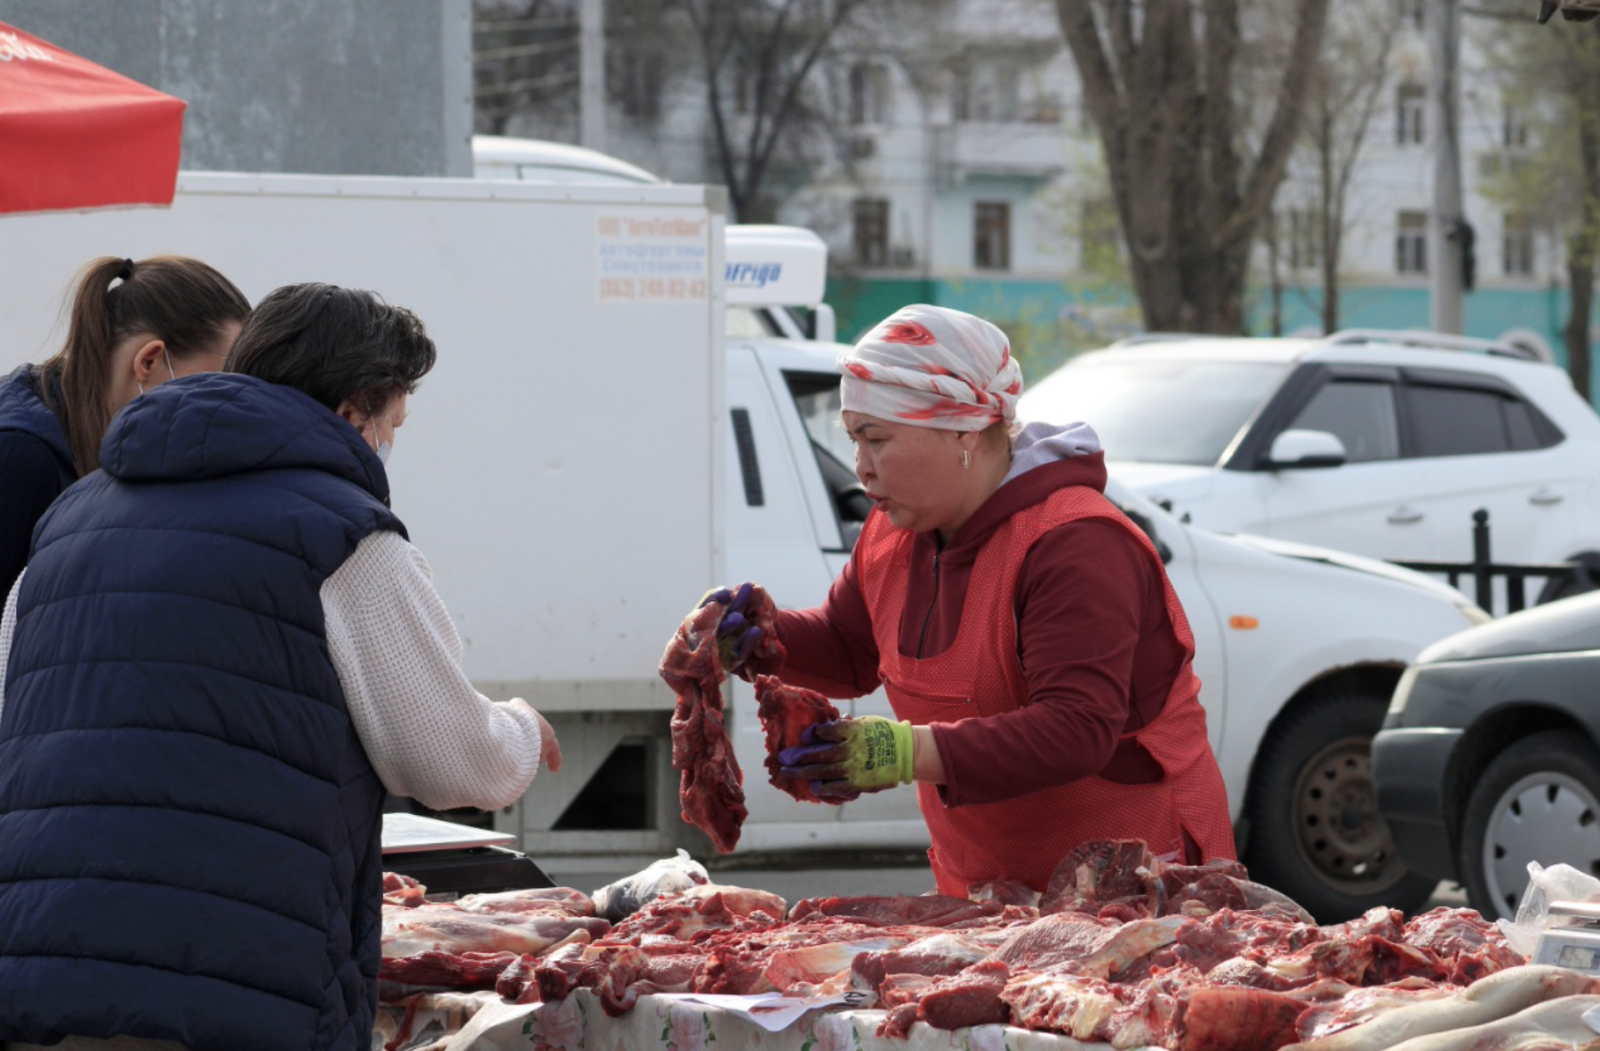 Мясной рынок в Астрахани. Ярмарка кутум в Астрахани. Новости астрахани сайт